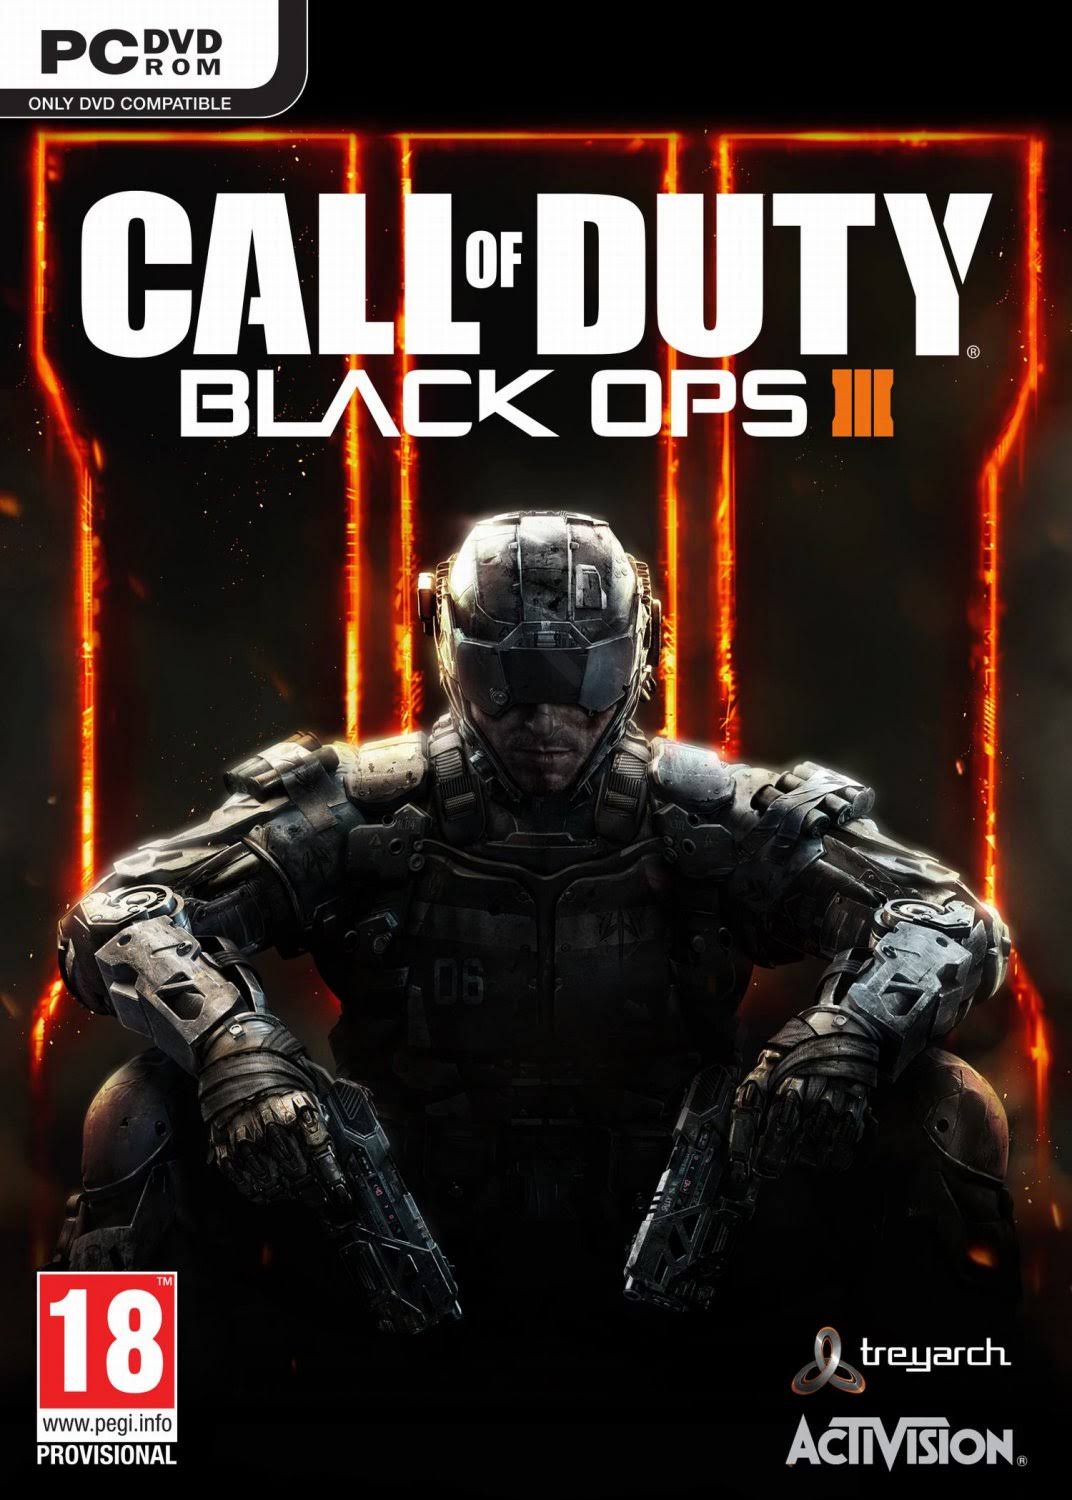 Call Of Duty: Black Ops III - Xbox One